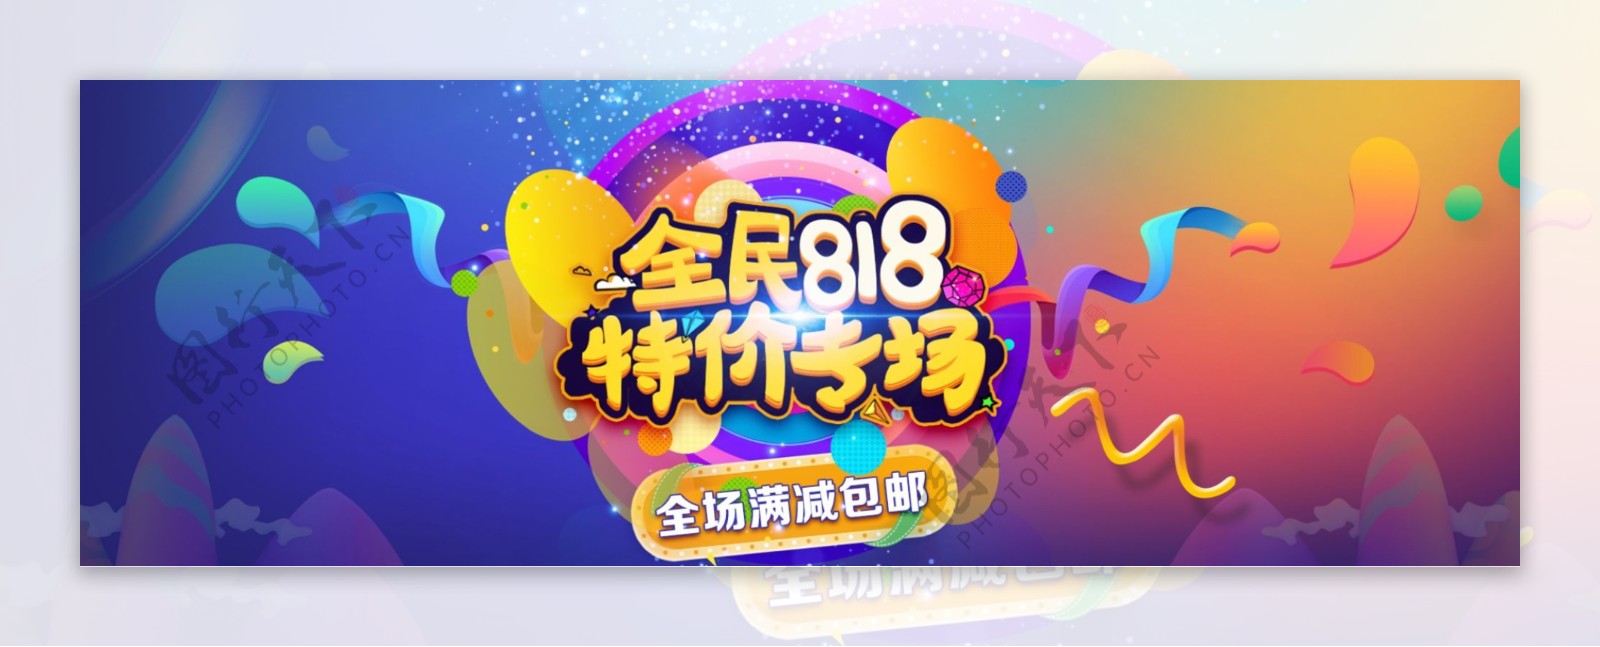 电商淘宝天猫818狂欢节活动促销节日海报banner炫酷模板